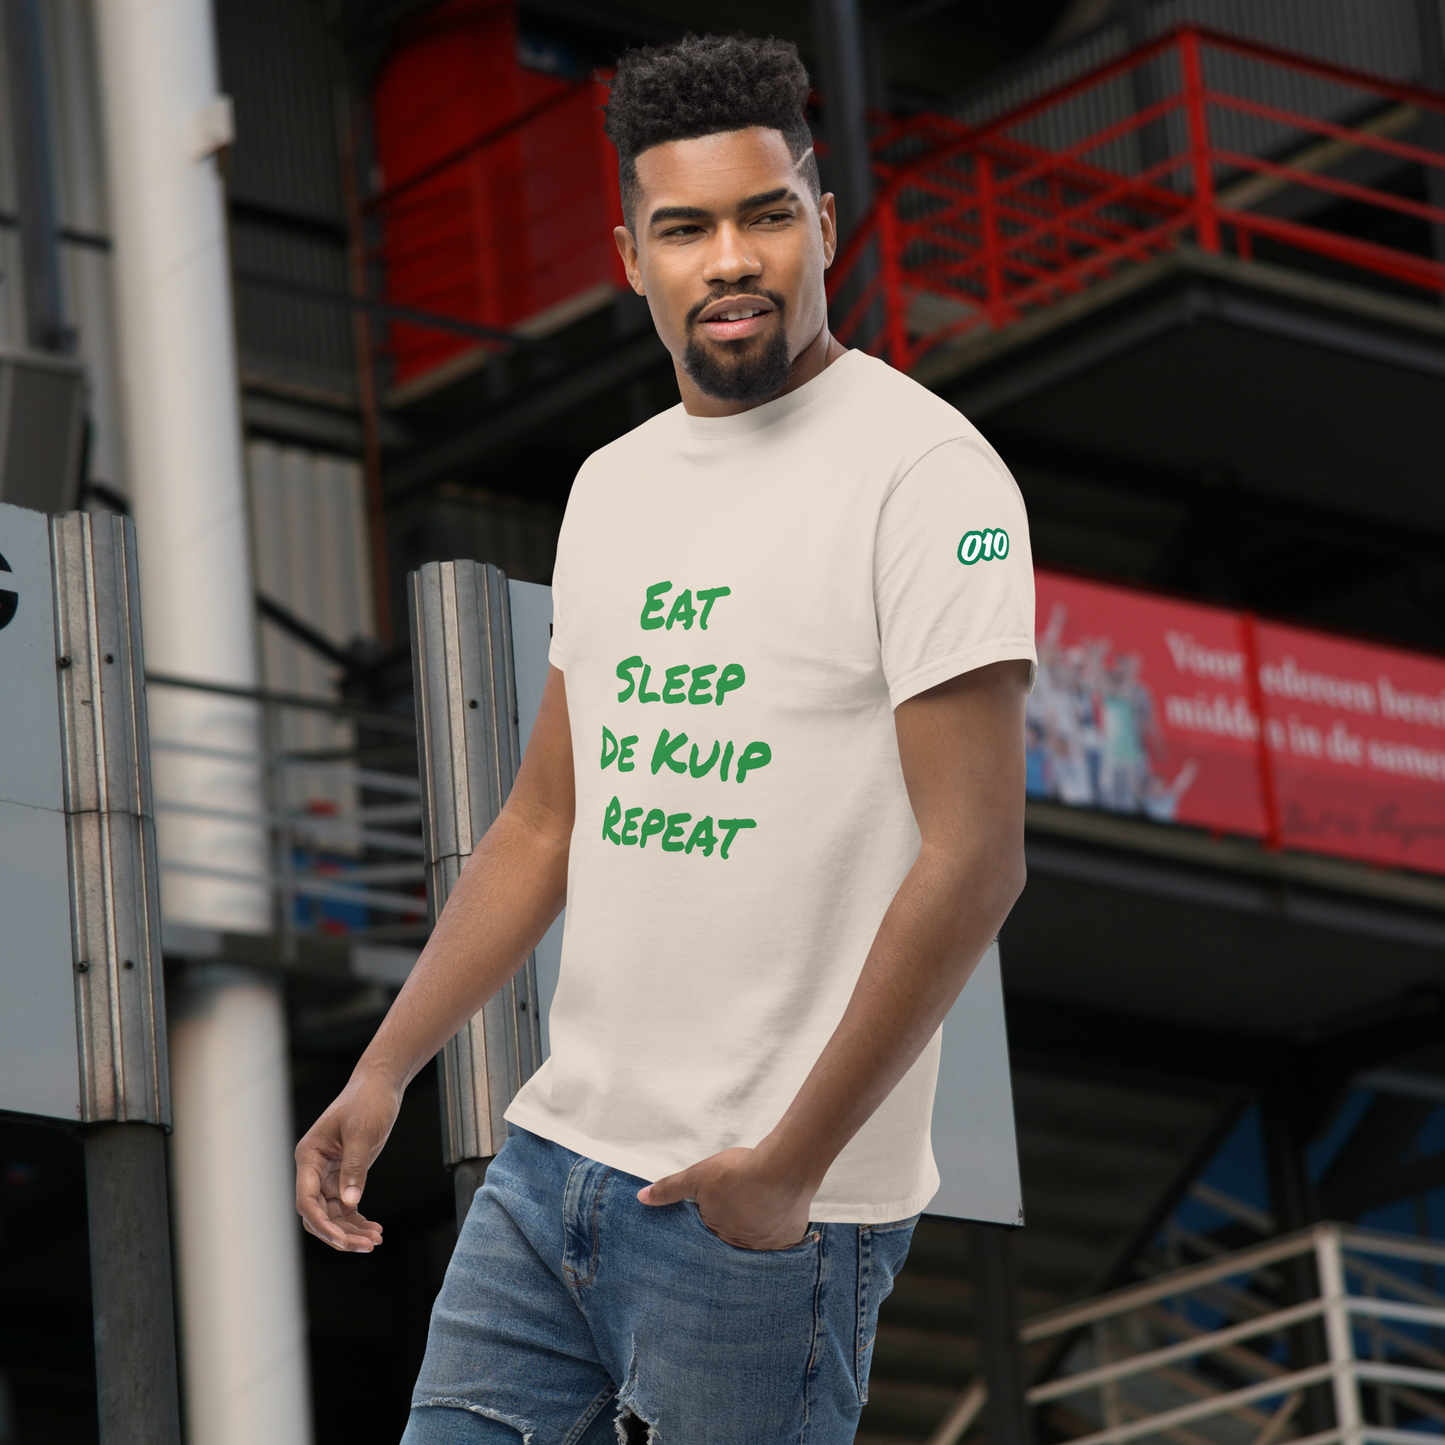 Eat Sleep De Kuip Repeat T-shirt